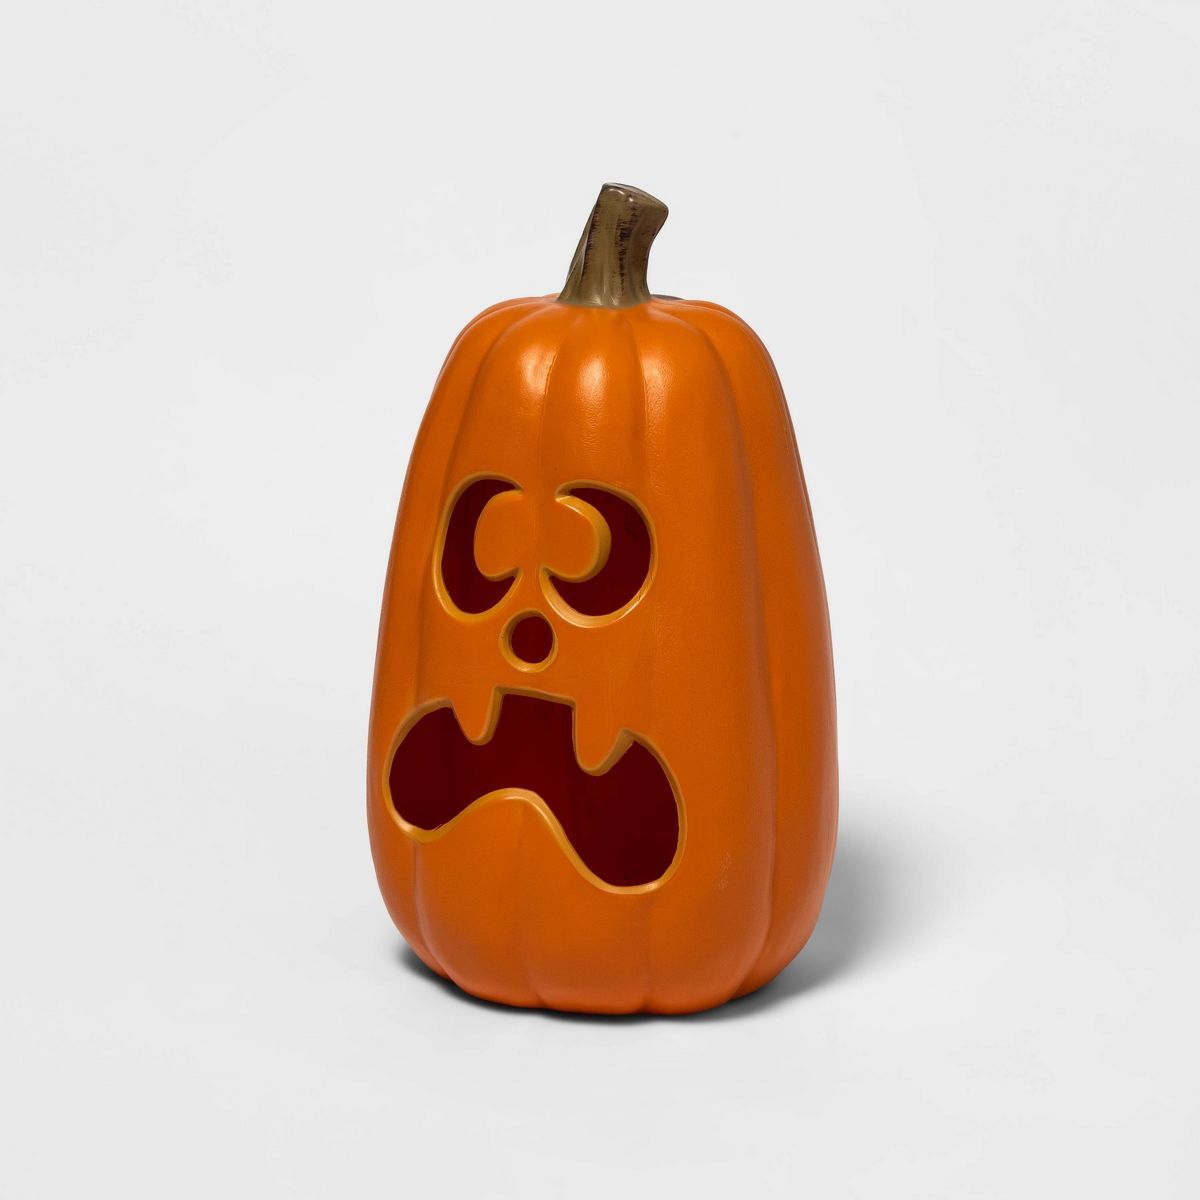 16" Light Up Pumpkin with 2 Teeth Orange Halloween Decorative Prop - Hyde & EEK! Boutique™ | Target